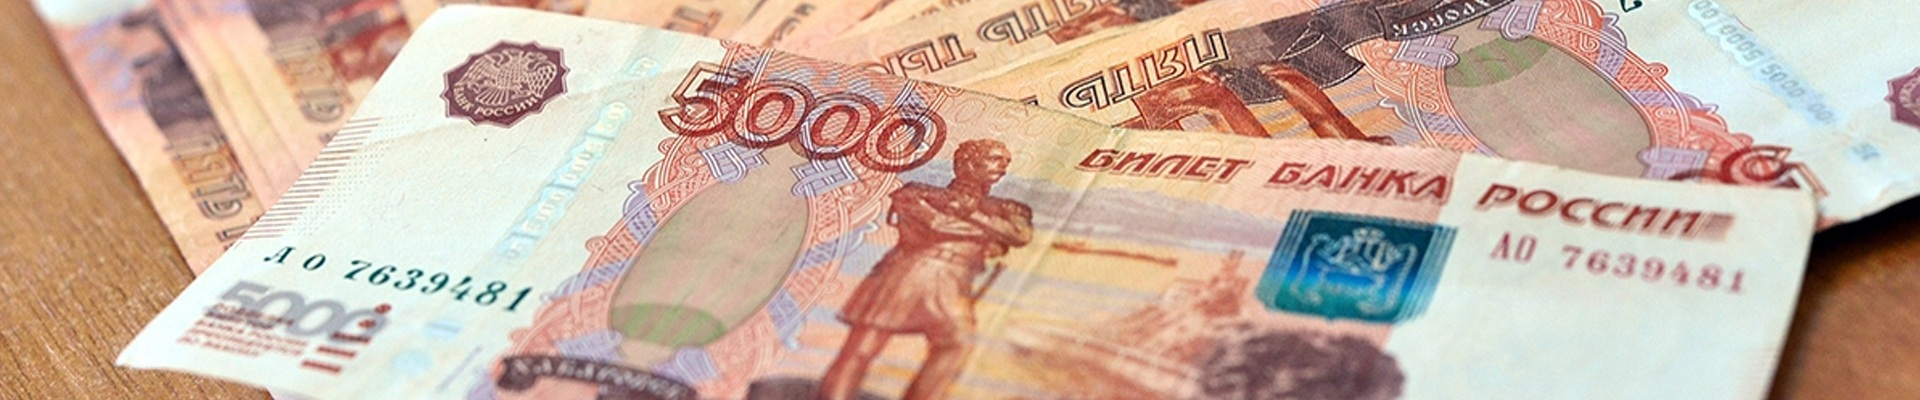 Последние изменения процентных ставок по потребительским кредитным предложениям от банка Казань